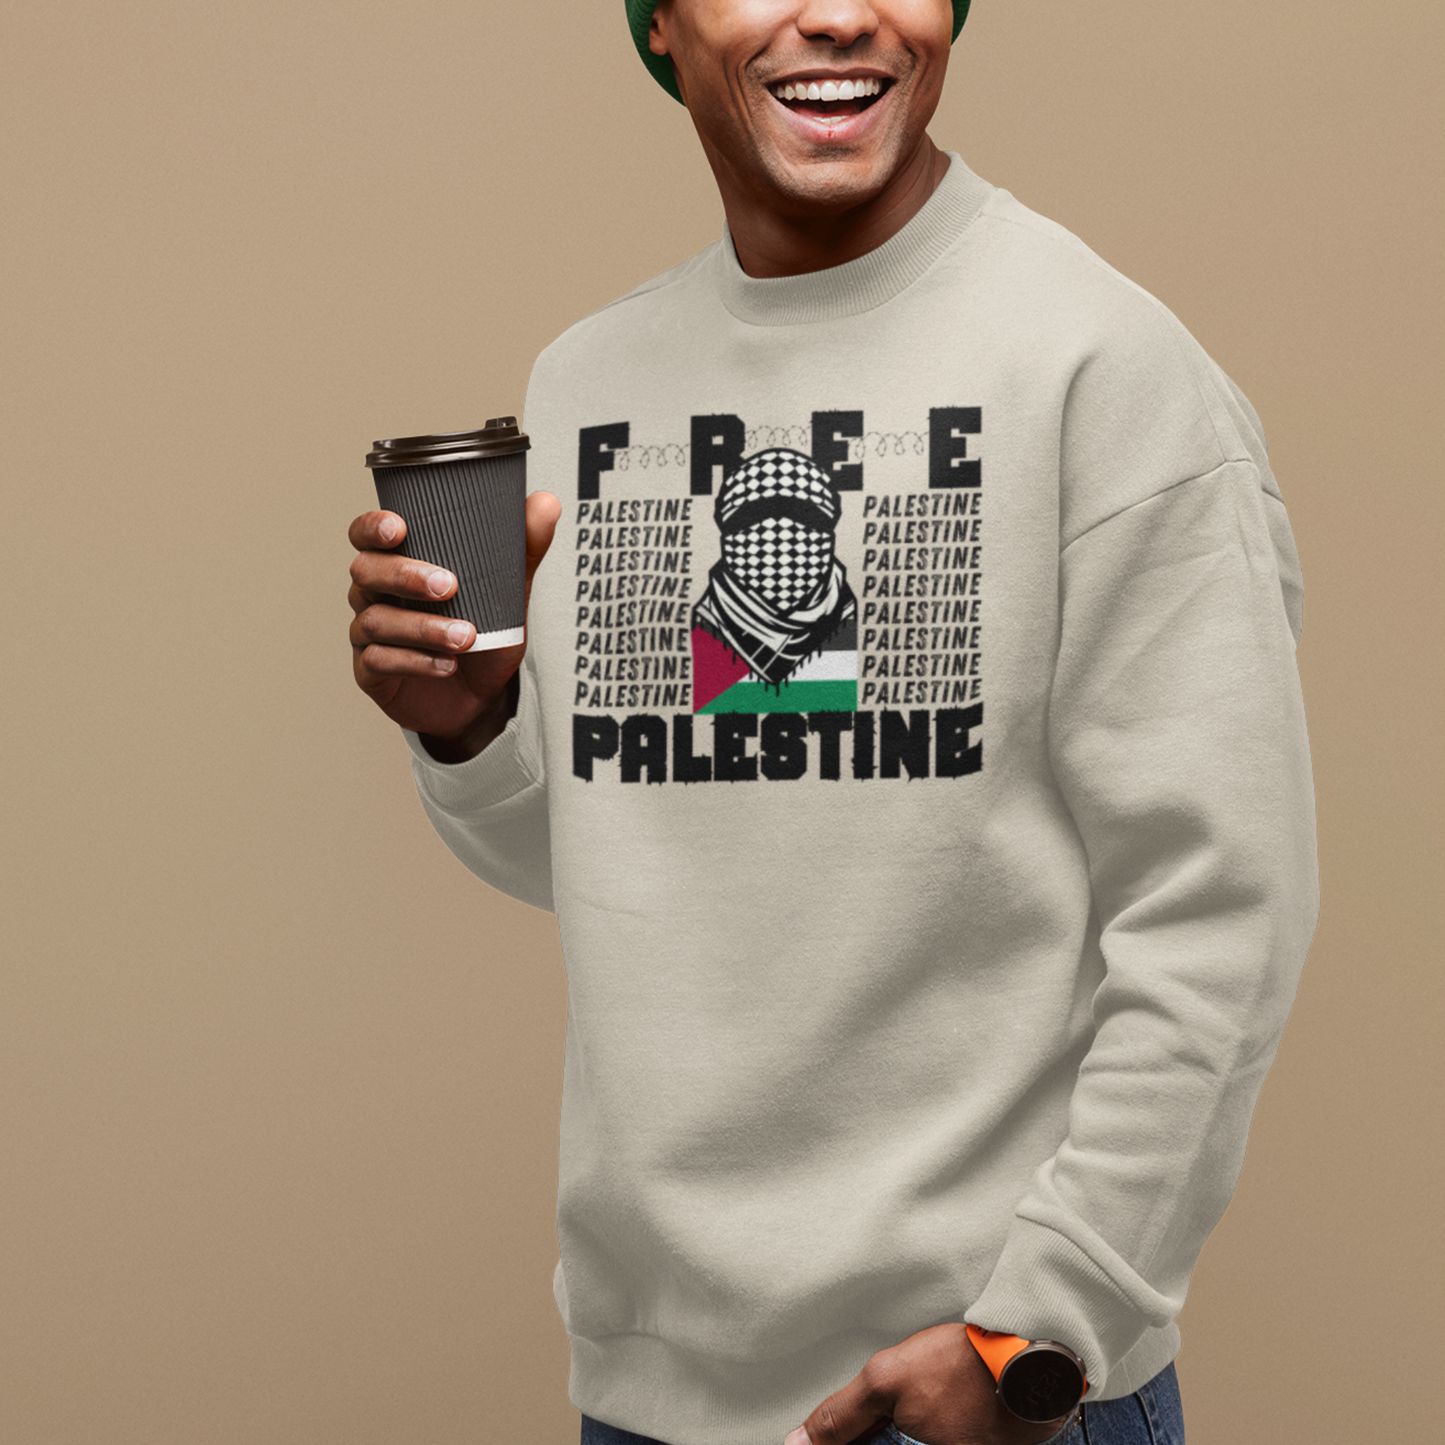 Free Palestine Keffiyeh Resistance Sweatshirt